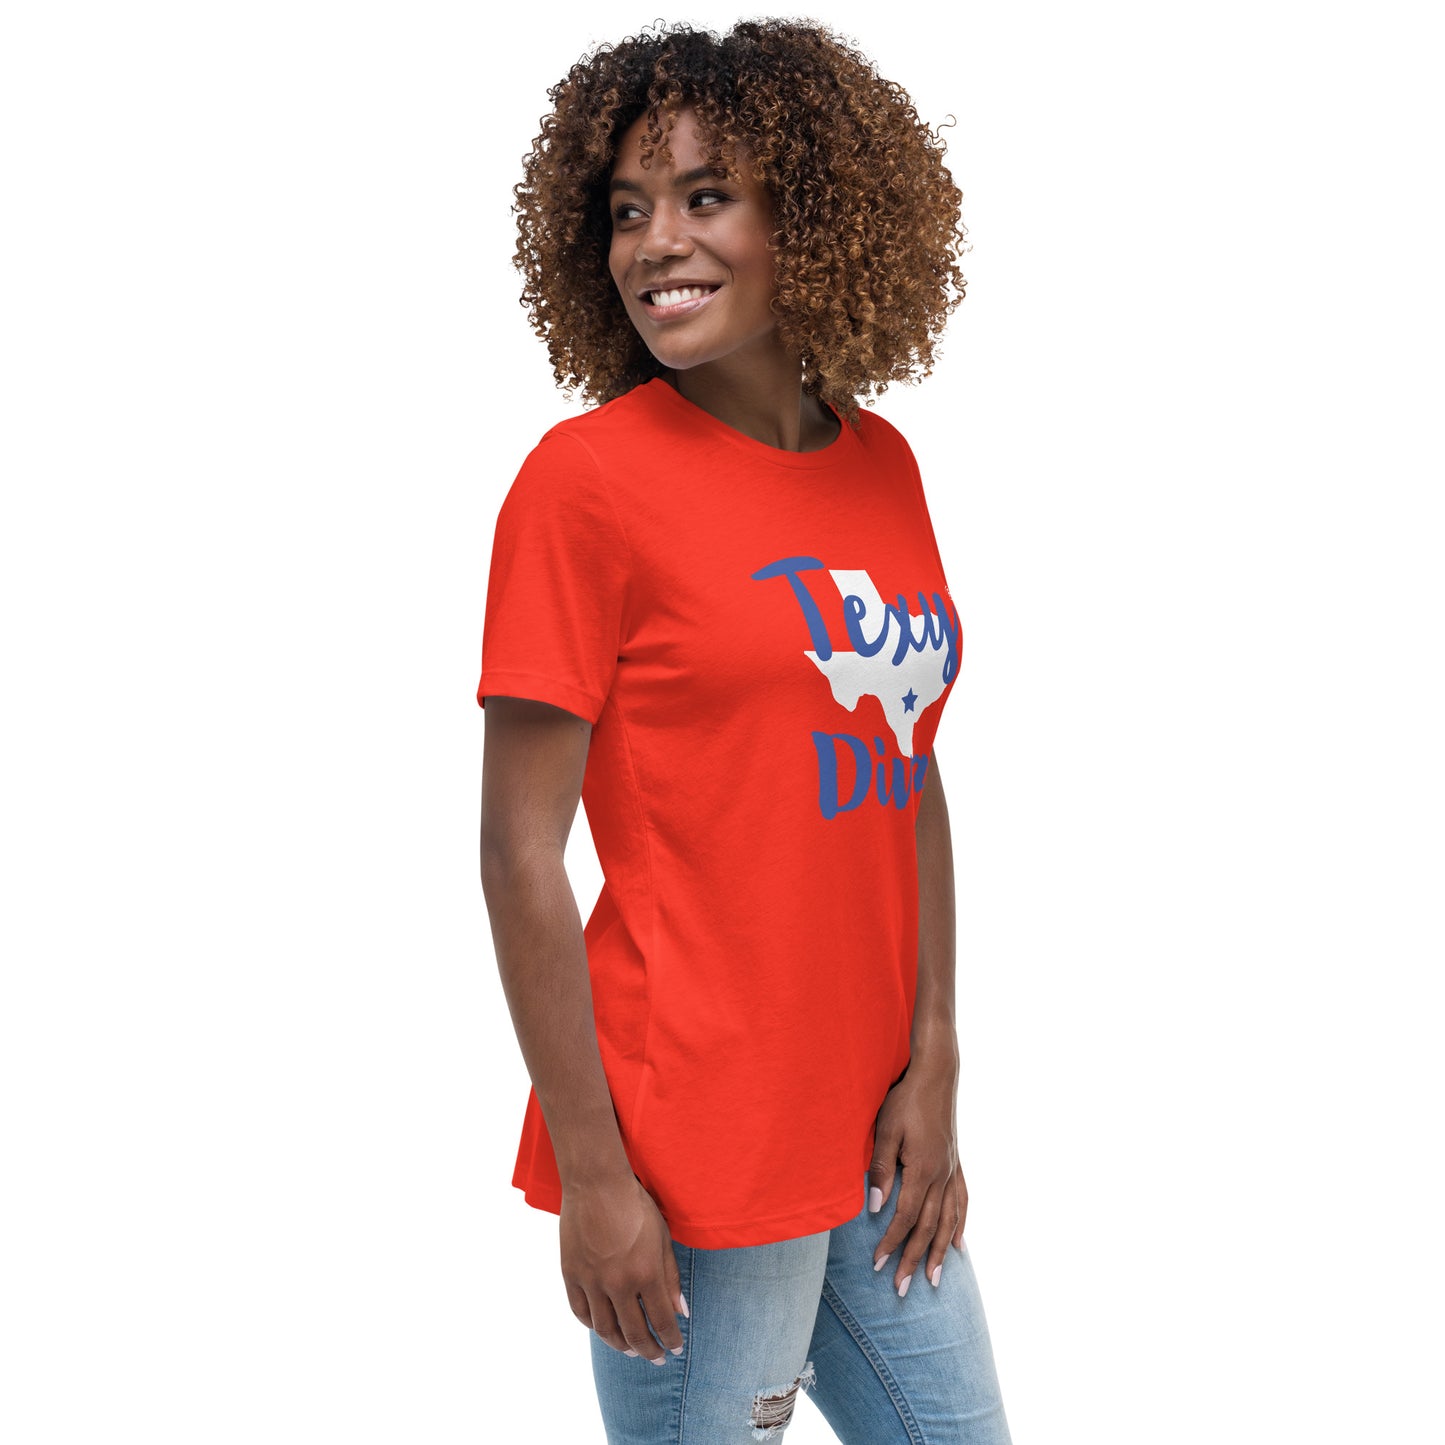 Women's Texy Diva Relaxed T-Shirt